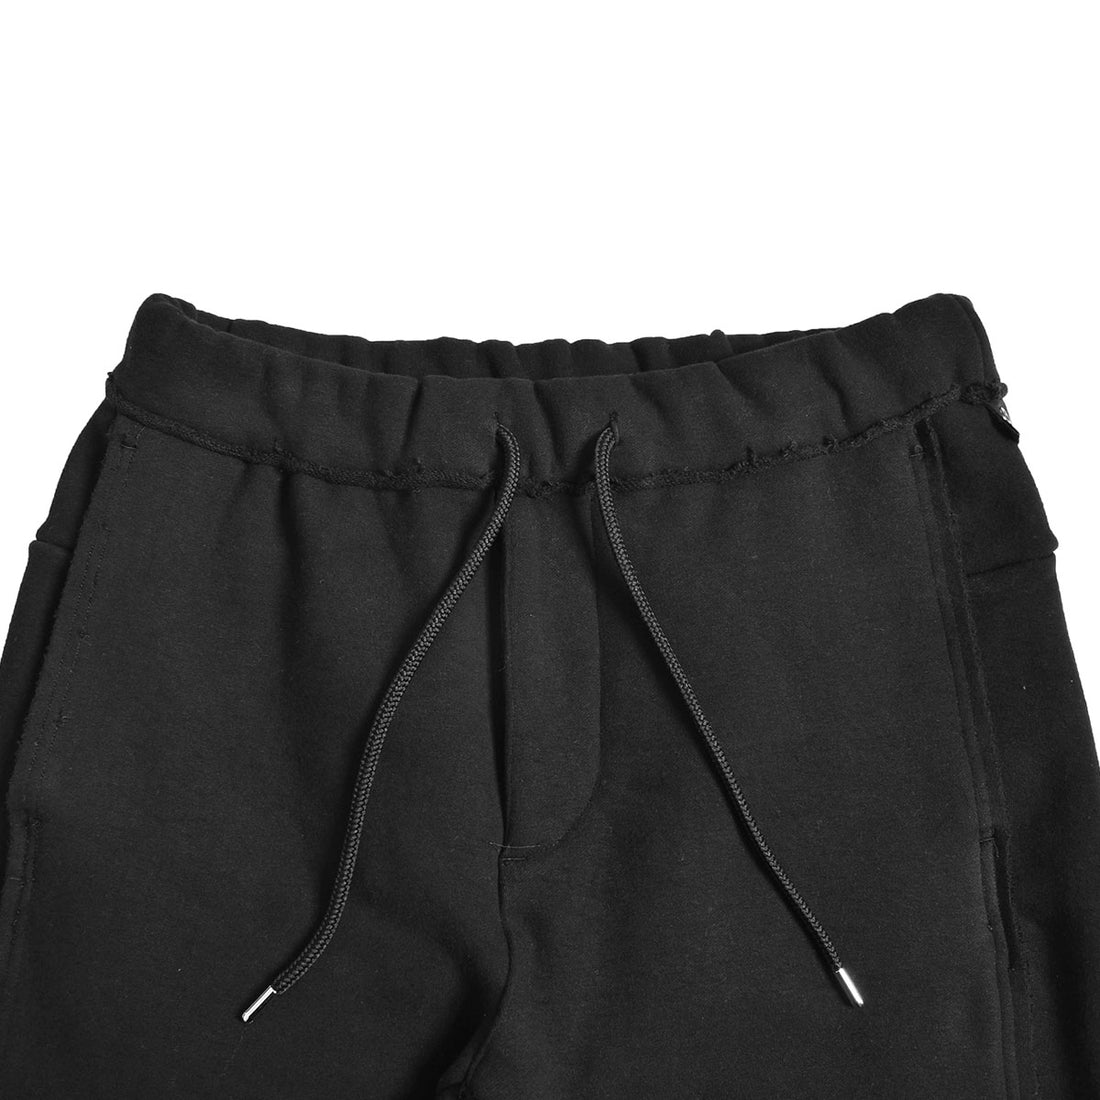 [wjk]super urake pants/BLACK(5173hj17c)